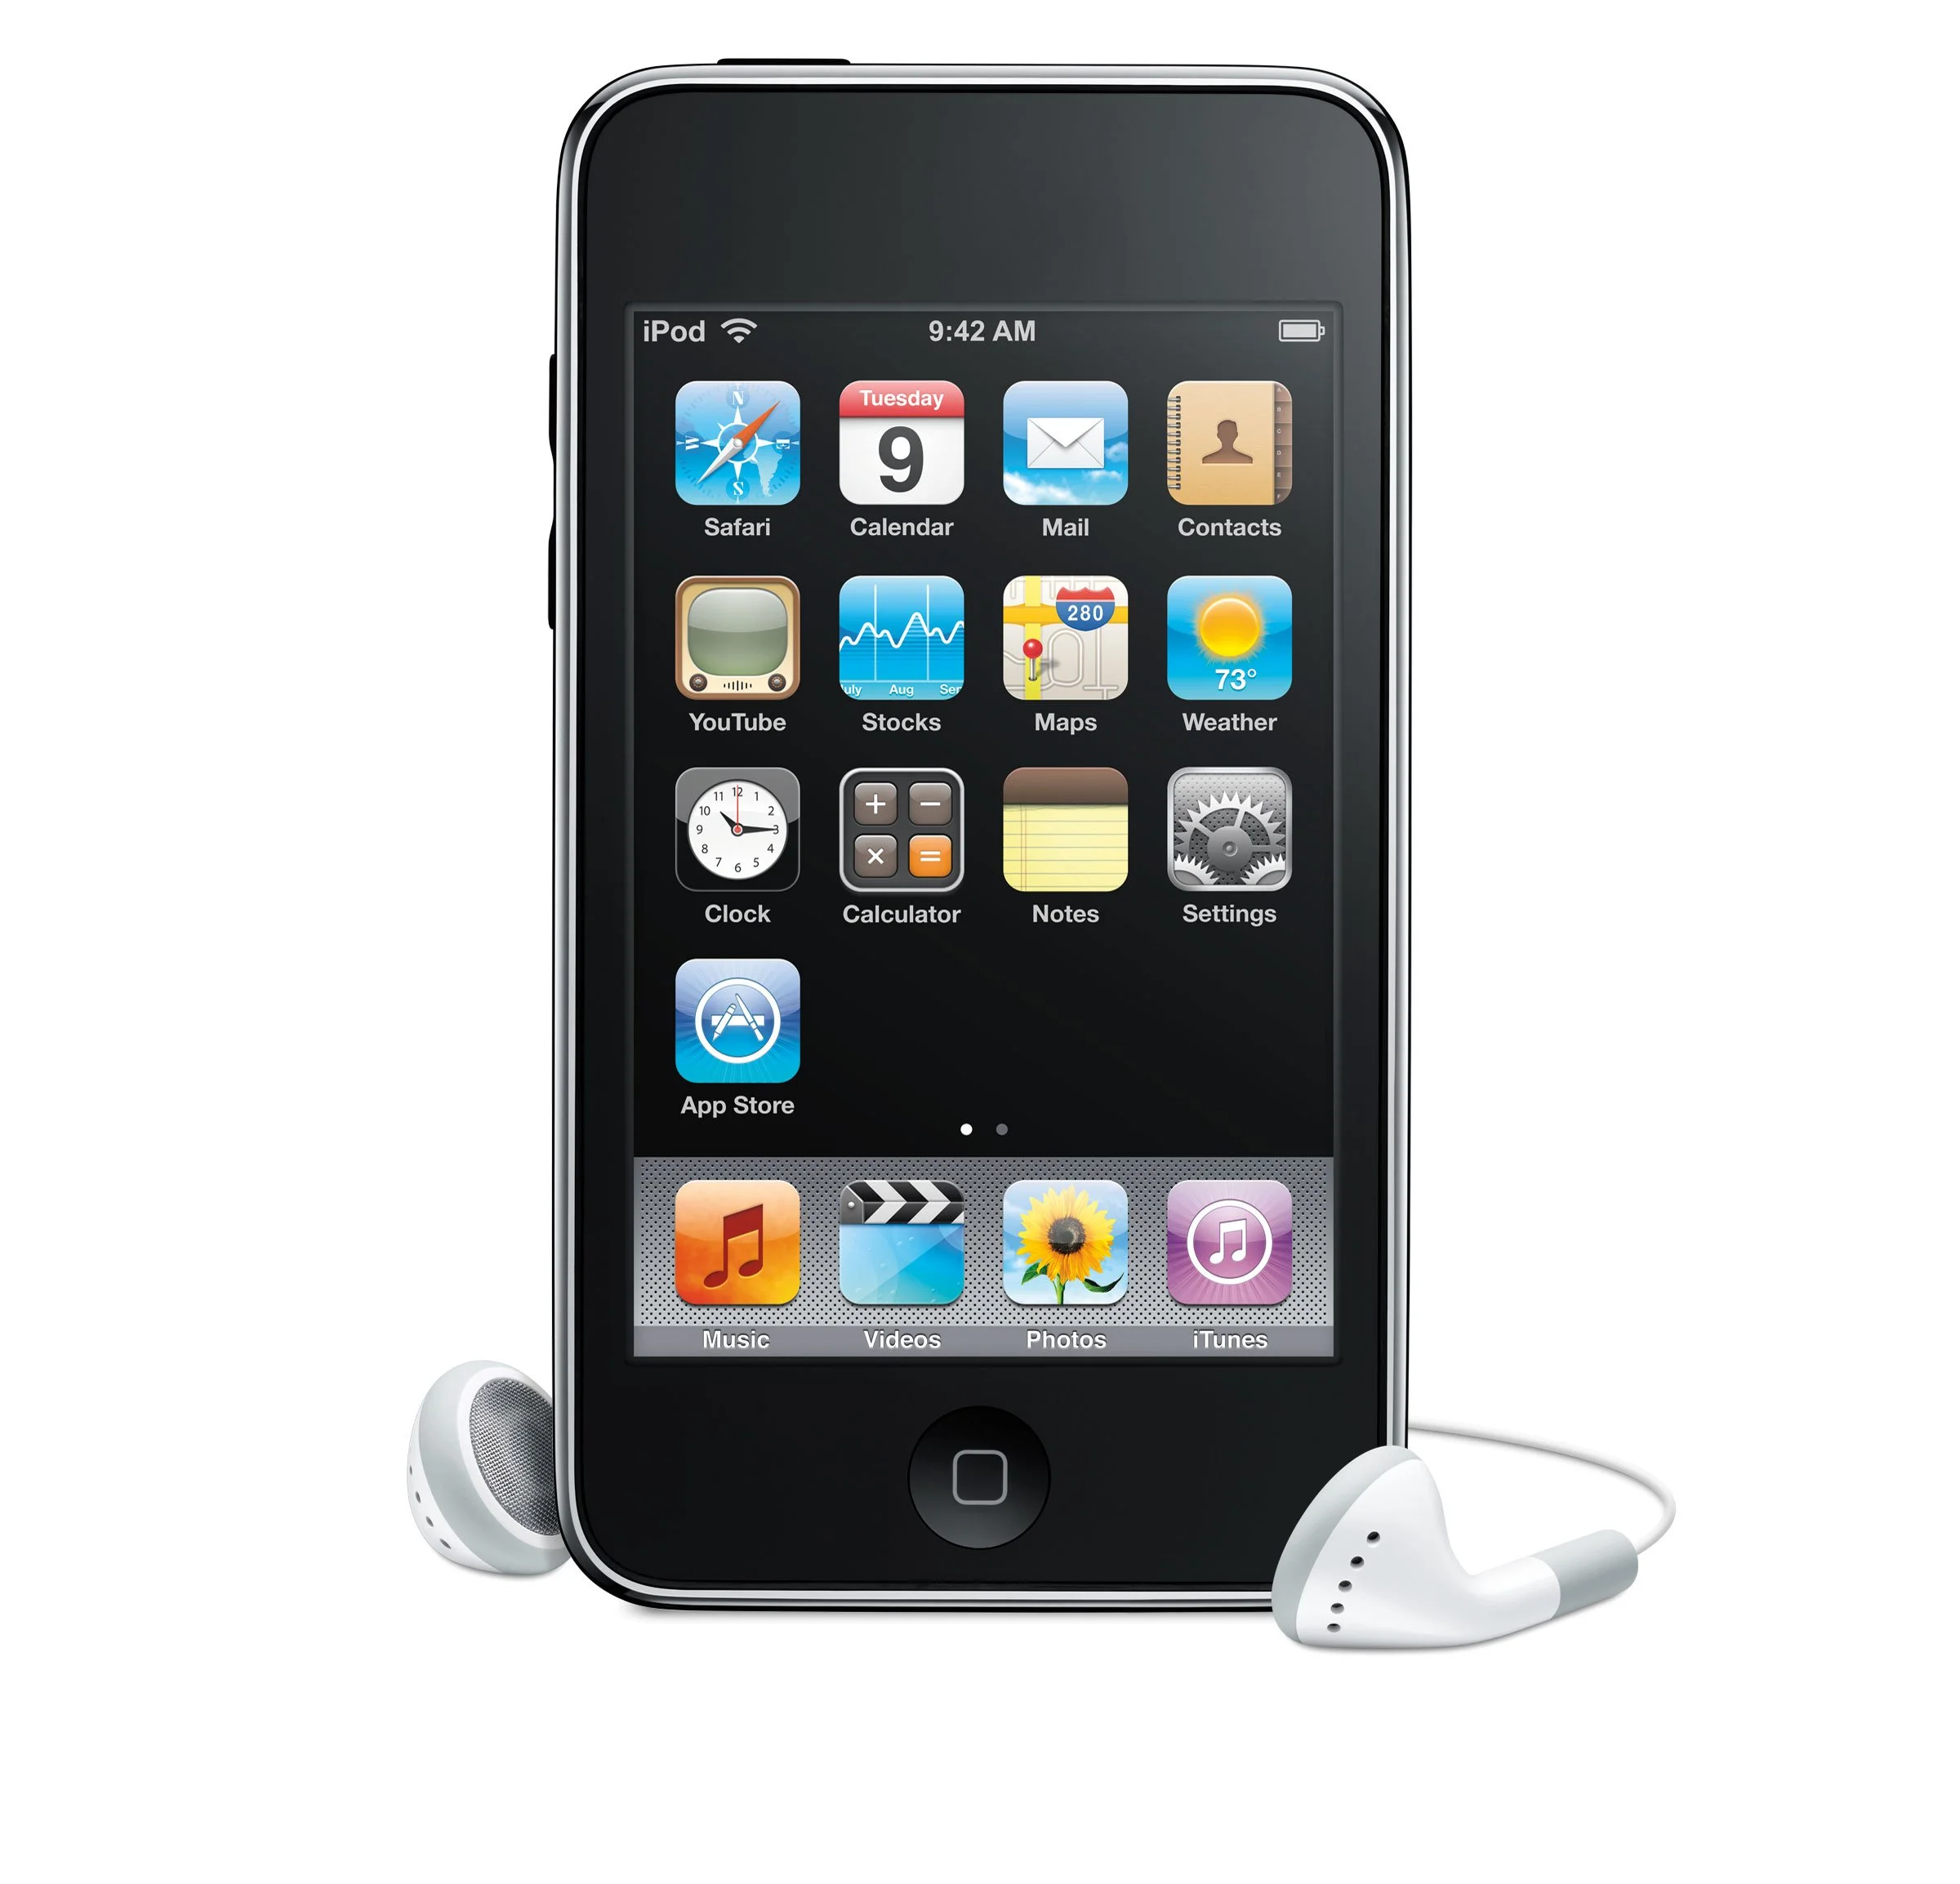 С Днем Рождения, iPod! 16 лет эволюции лучшего MP3 плеера - фото 13